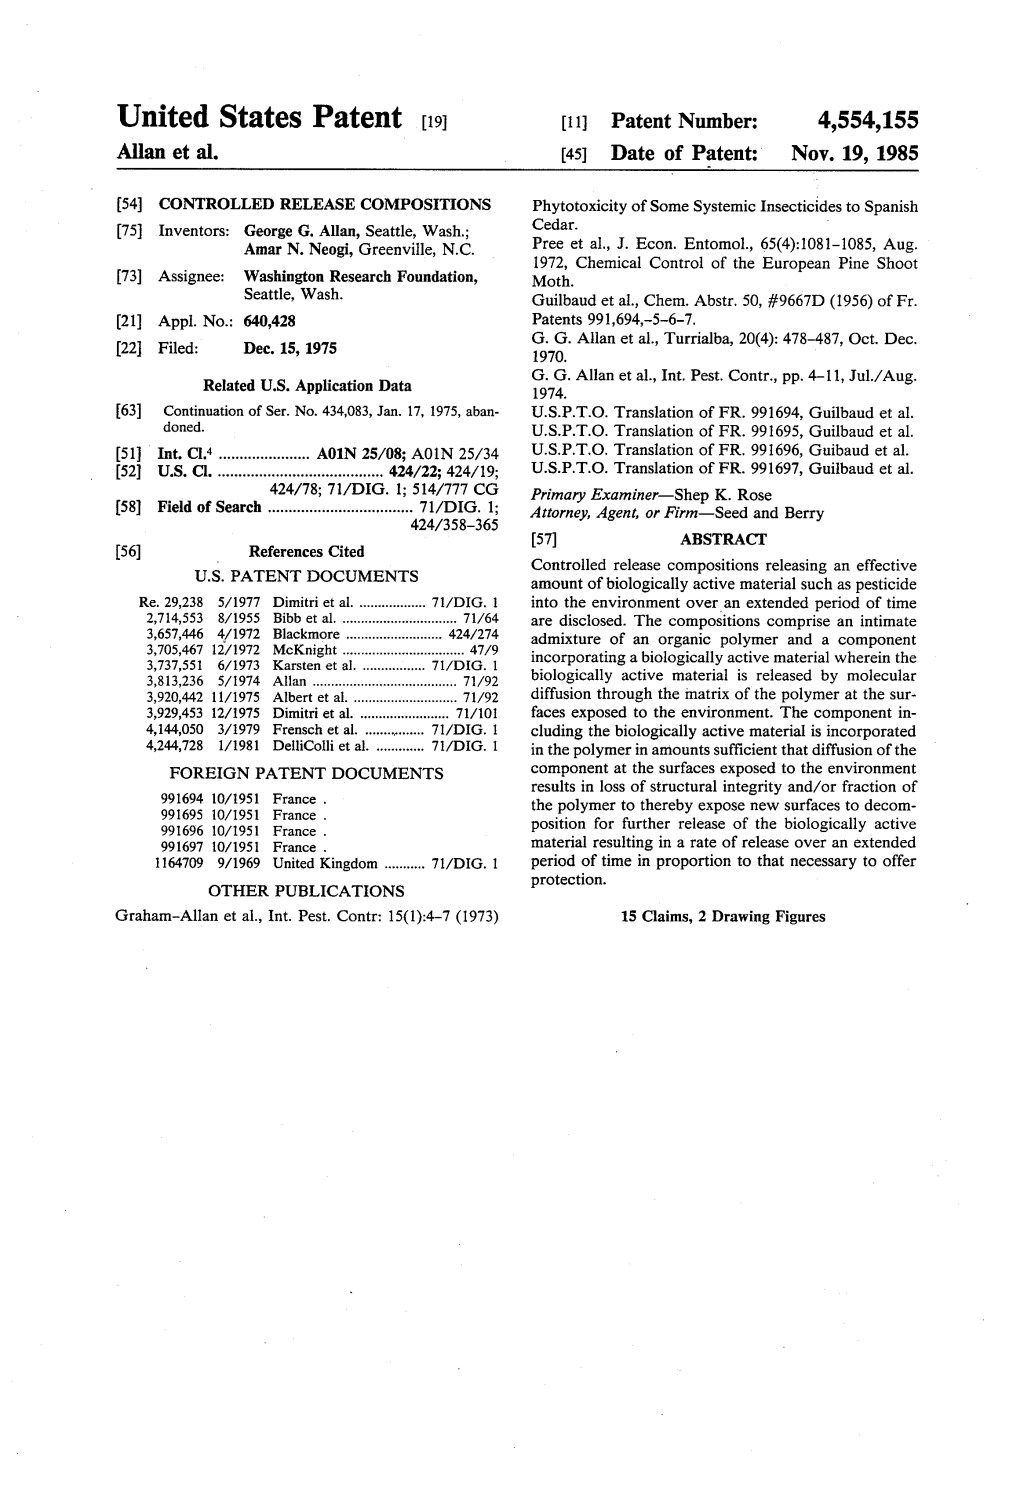 United States Patent 19 11 Patent Number: 4,554,155 Allan Et Al